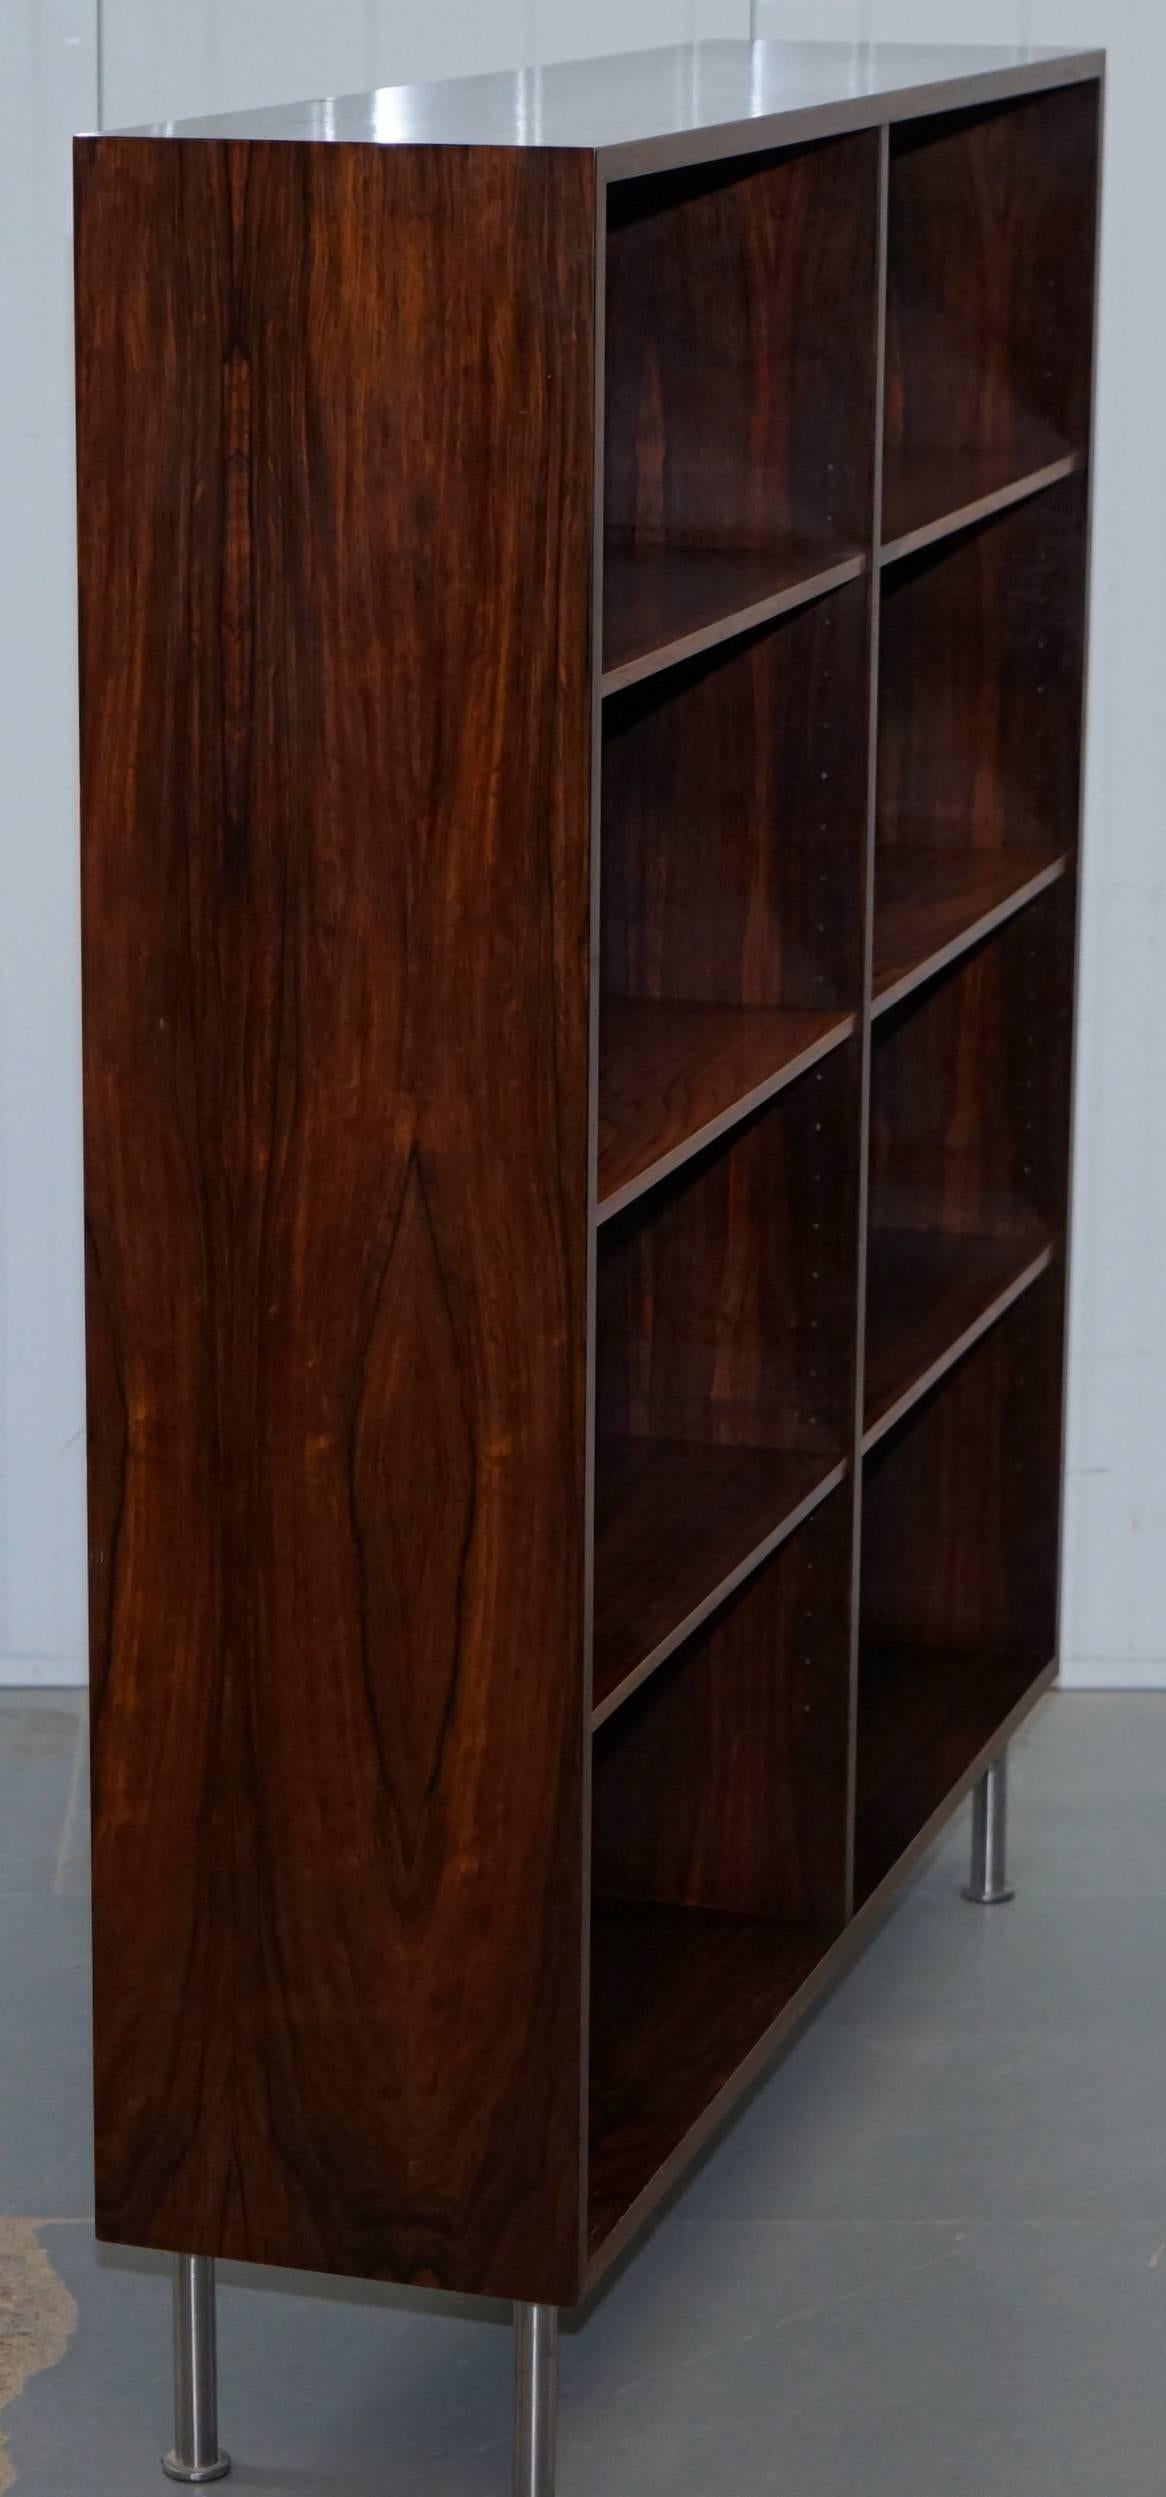 Hardwood Pair of Stunning Omann Jun Mobelfabrik Mid-Century Modern Wood Bookcases